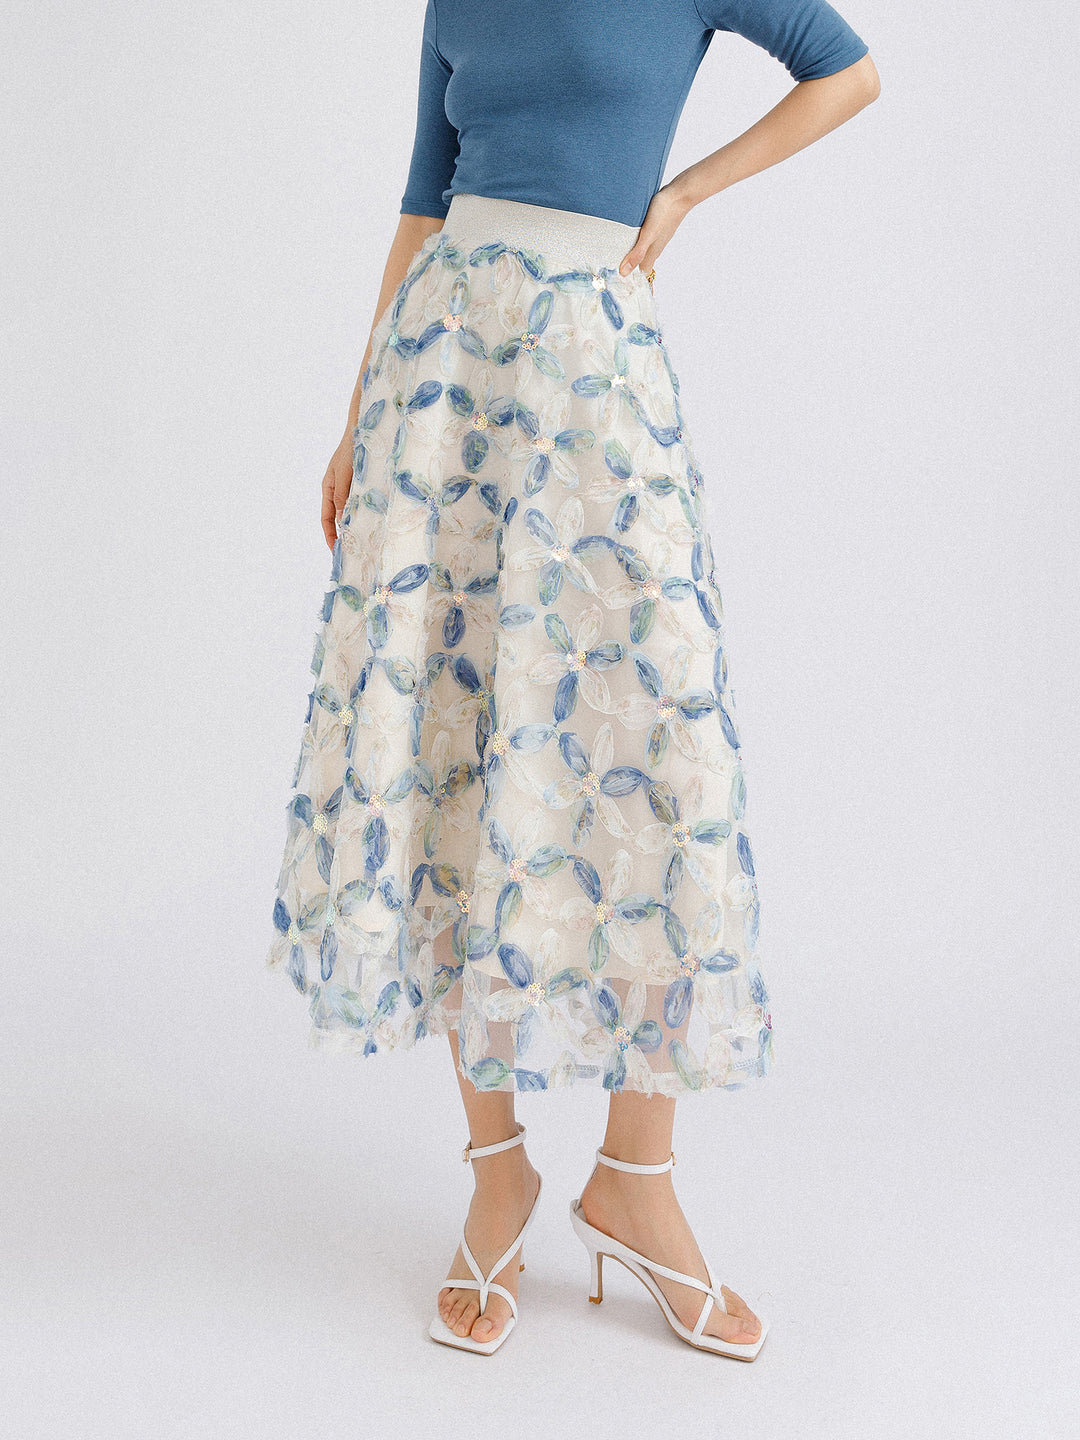 Sequins x flower garden chiffon skirt 